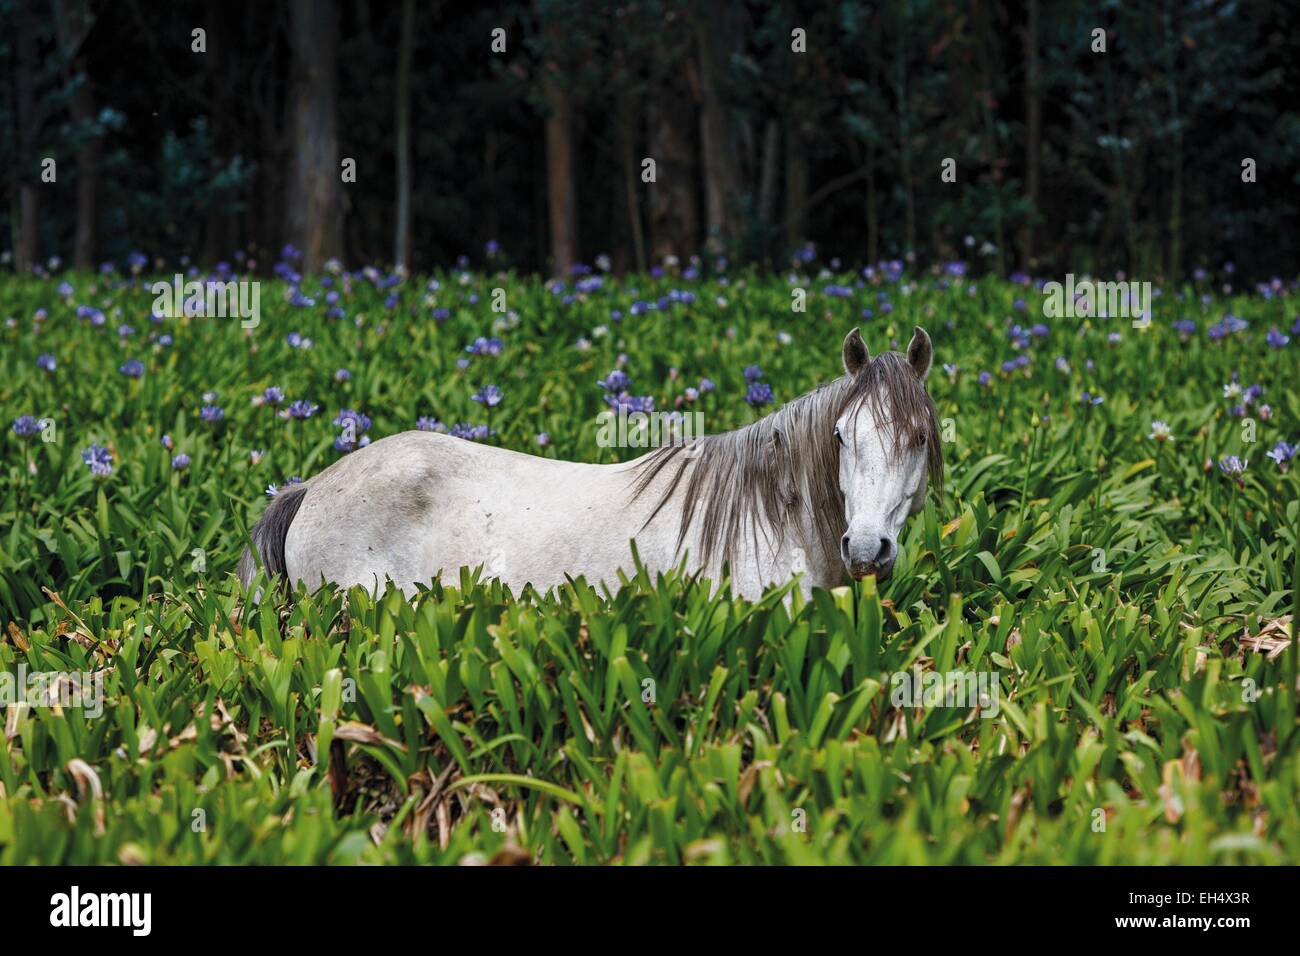 L'Équateur, Pichincha, Cayambe, cheval sauvage dans un domaine de l'agapanthus Banque D'Images